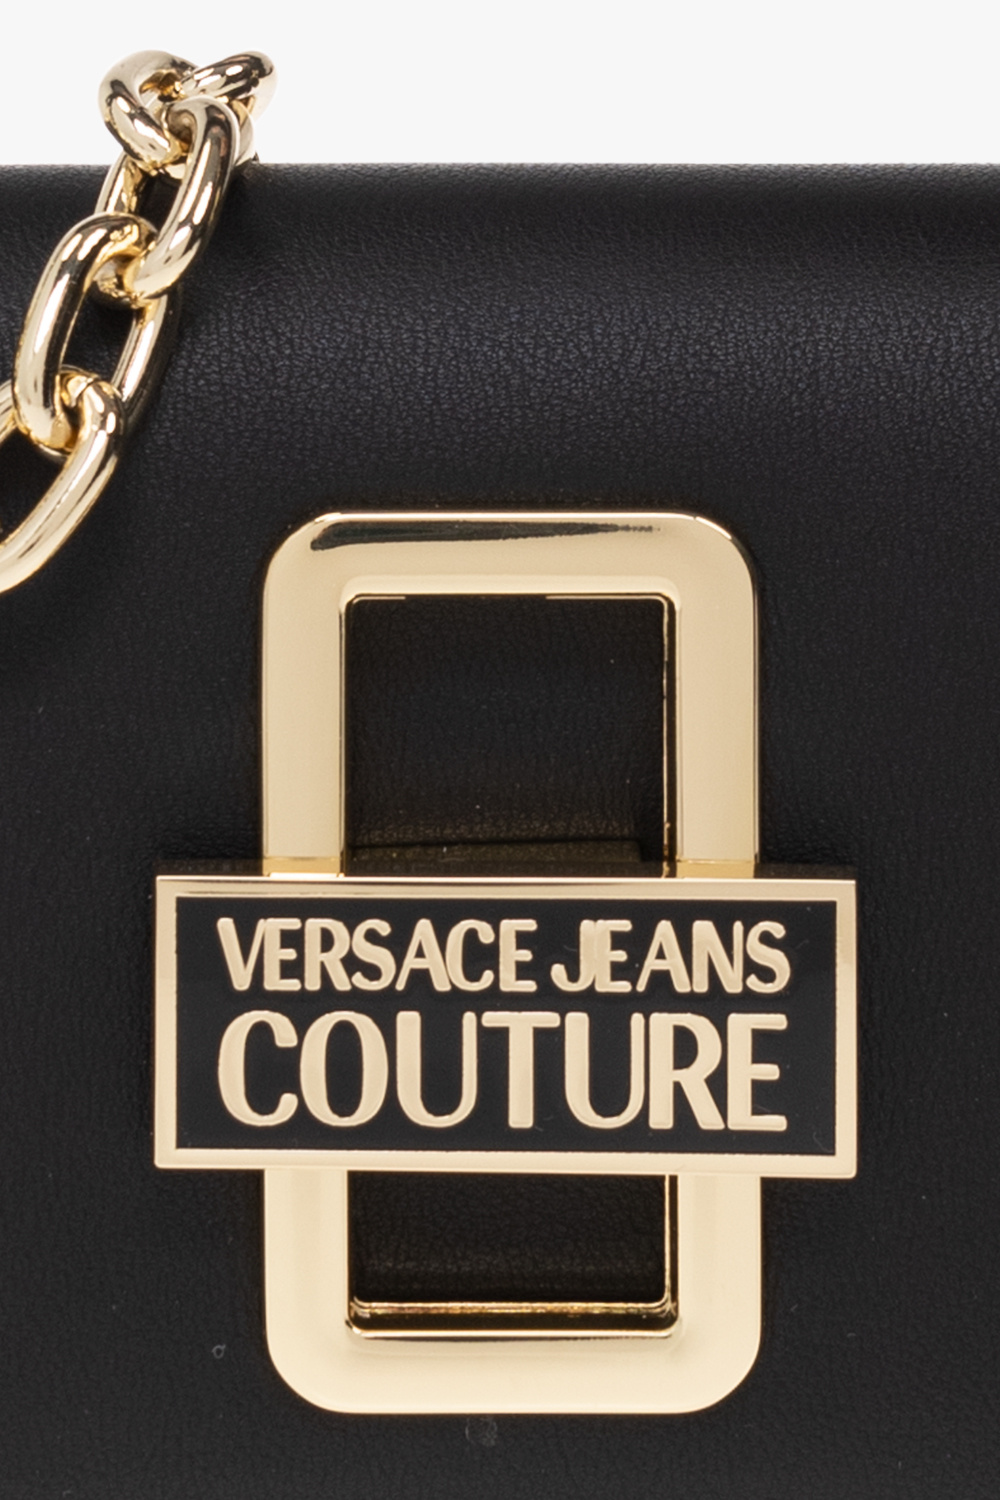 Versace Jeans Couture JIL SANDER MEN CLOTHING SHORTS